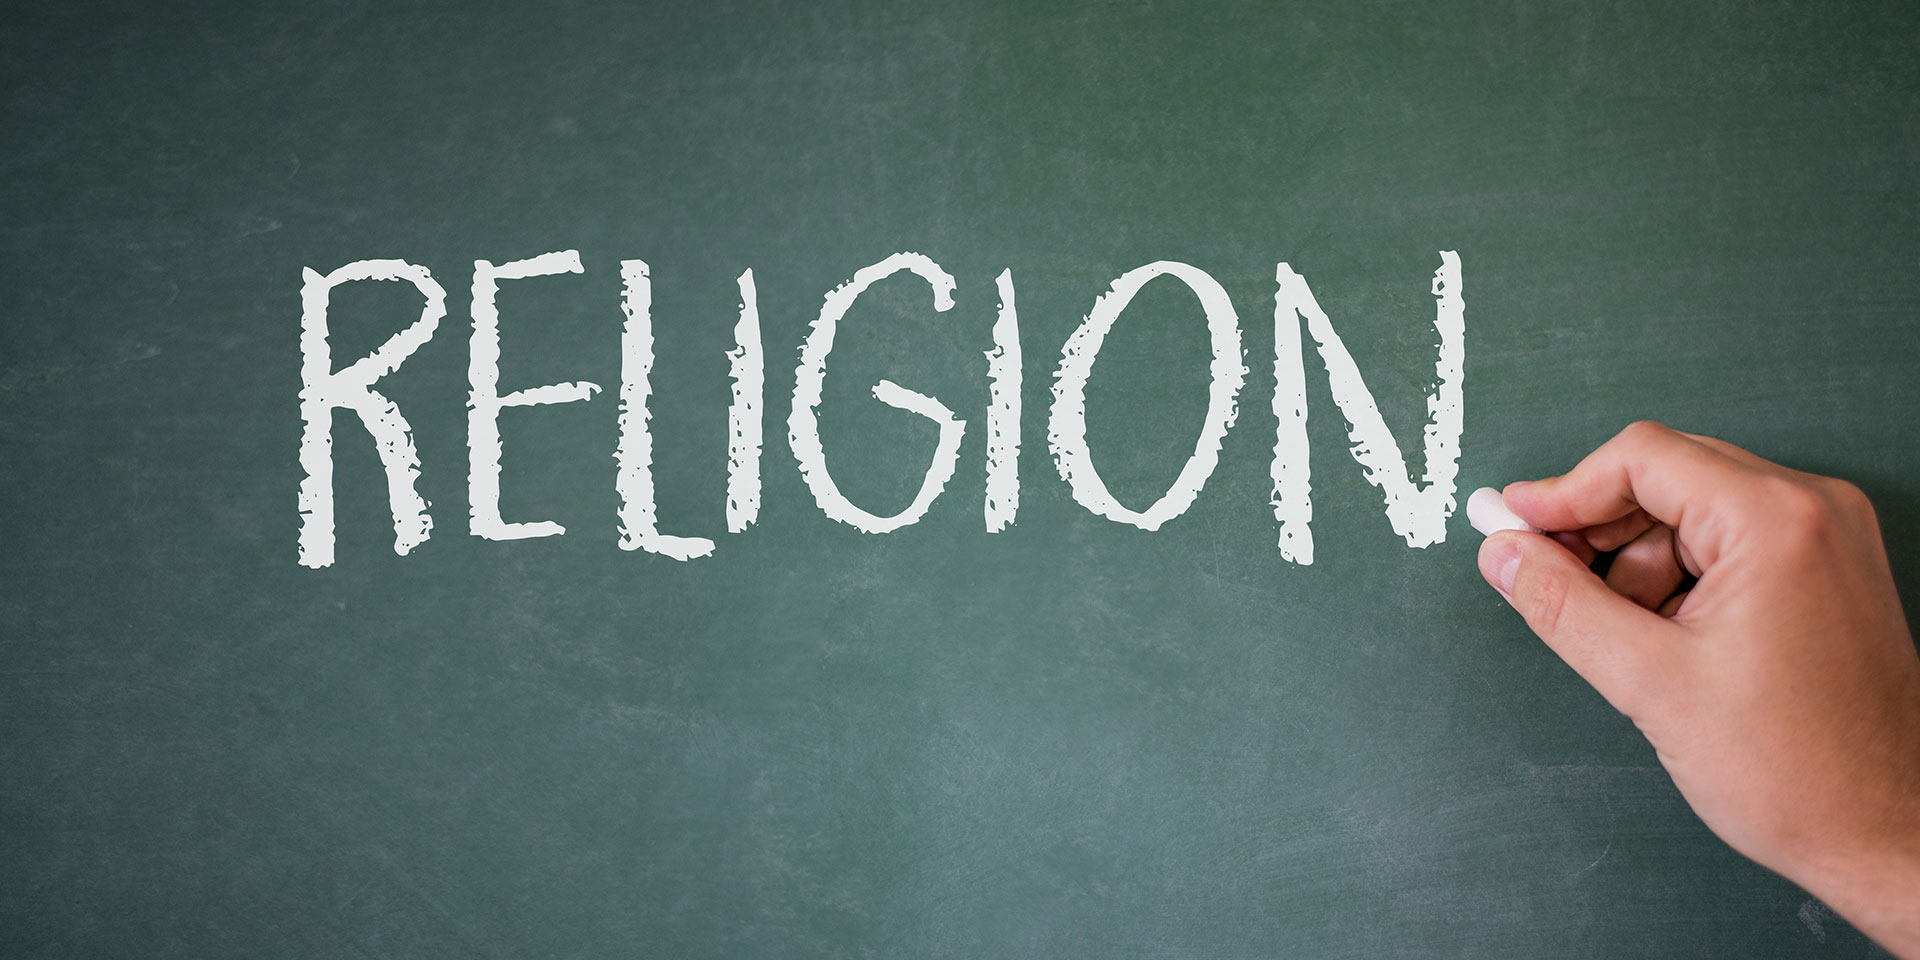 Religion unterrichten